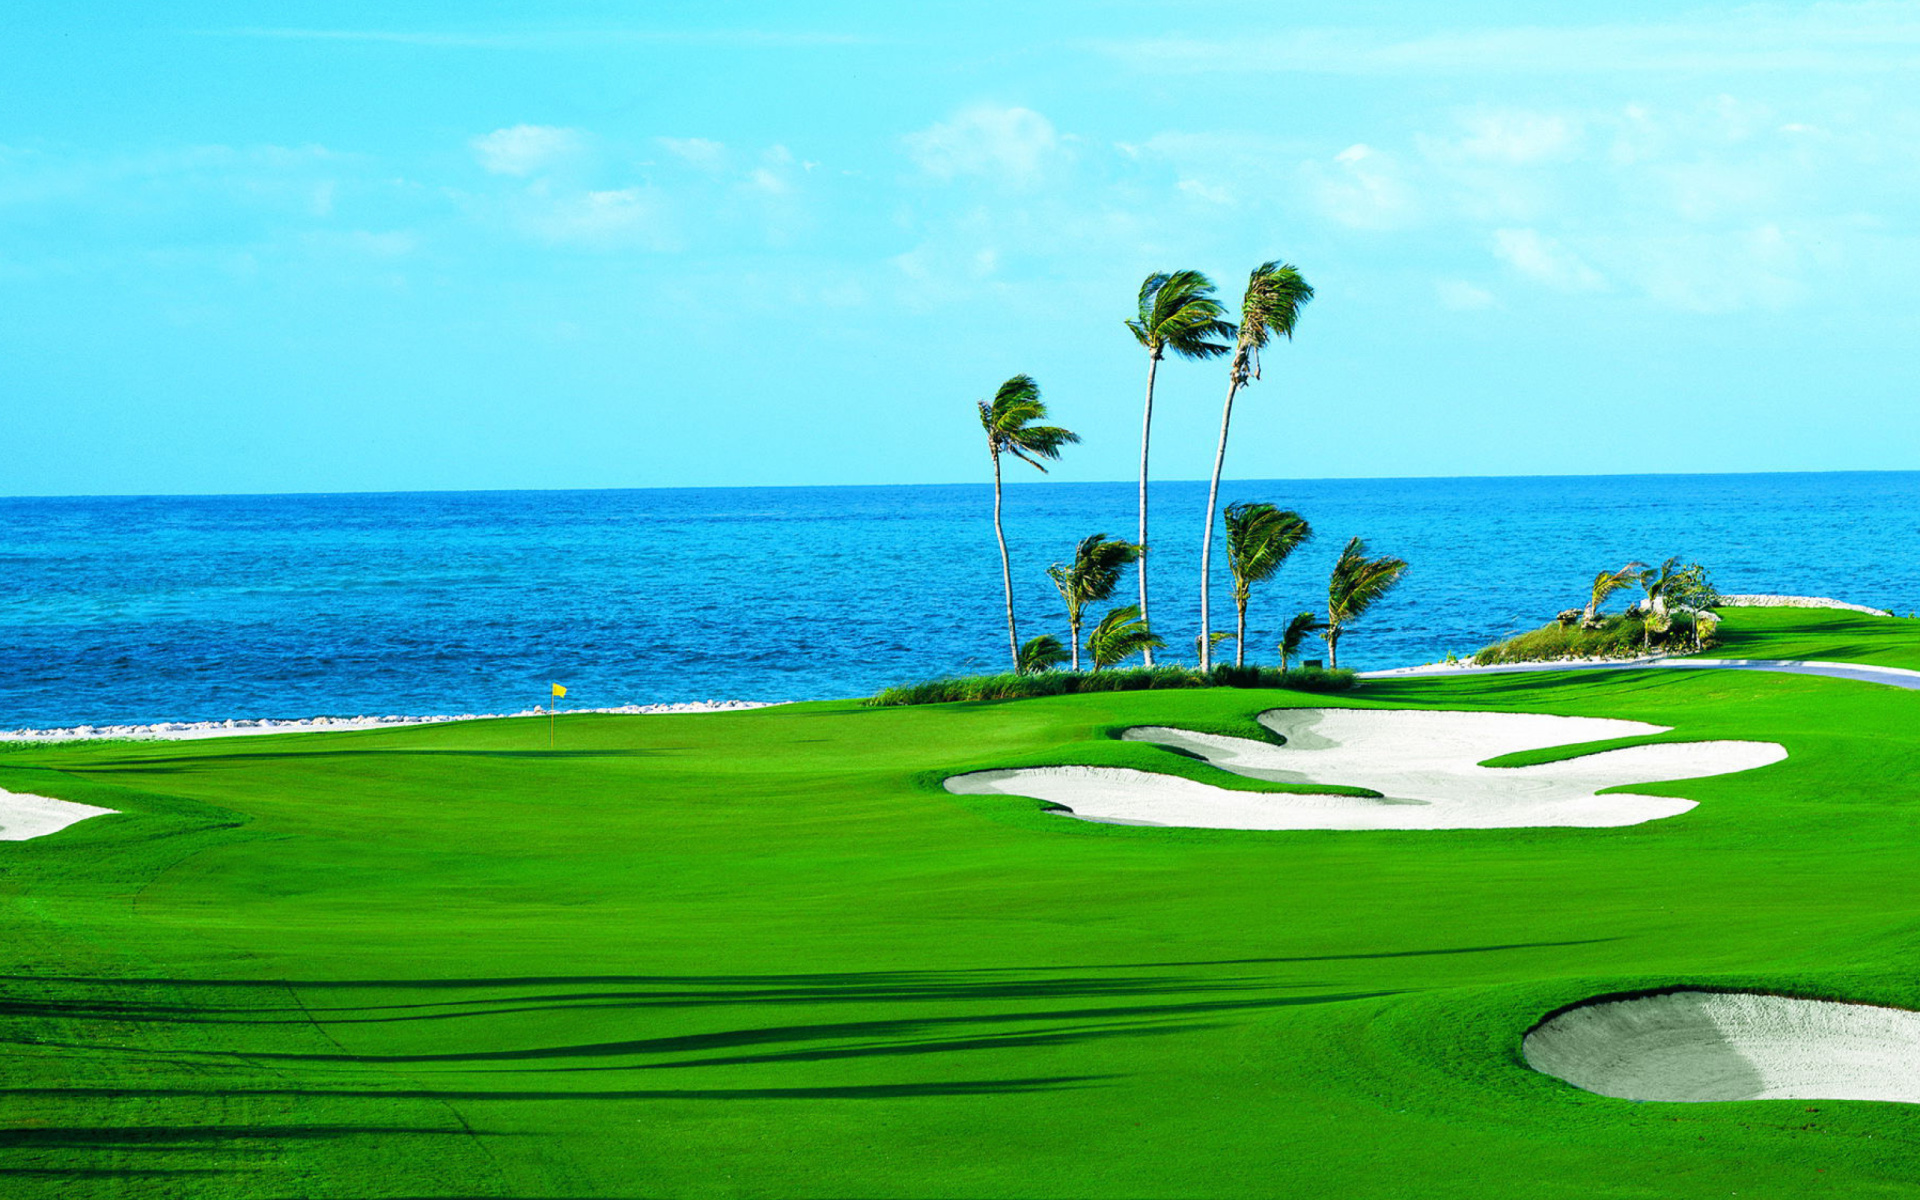 green, golf, golf course, man made, blue, horizon, ocean, palm tree, water